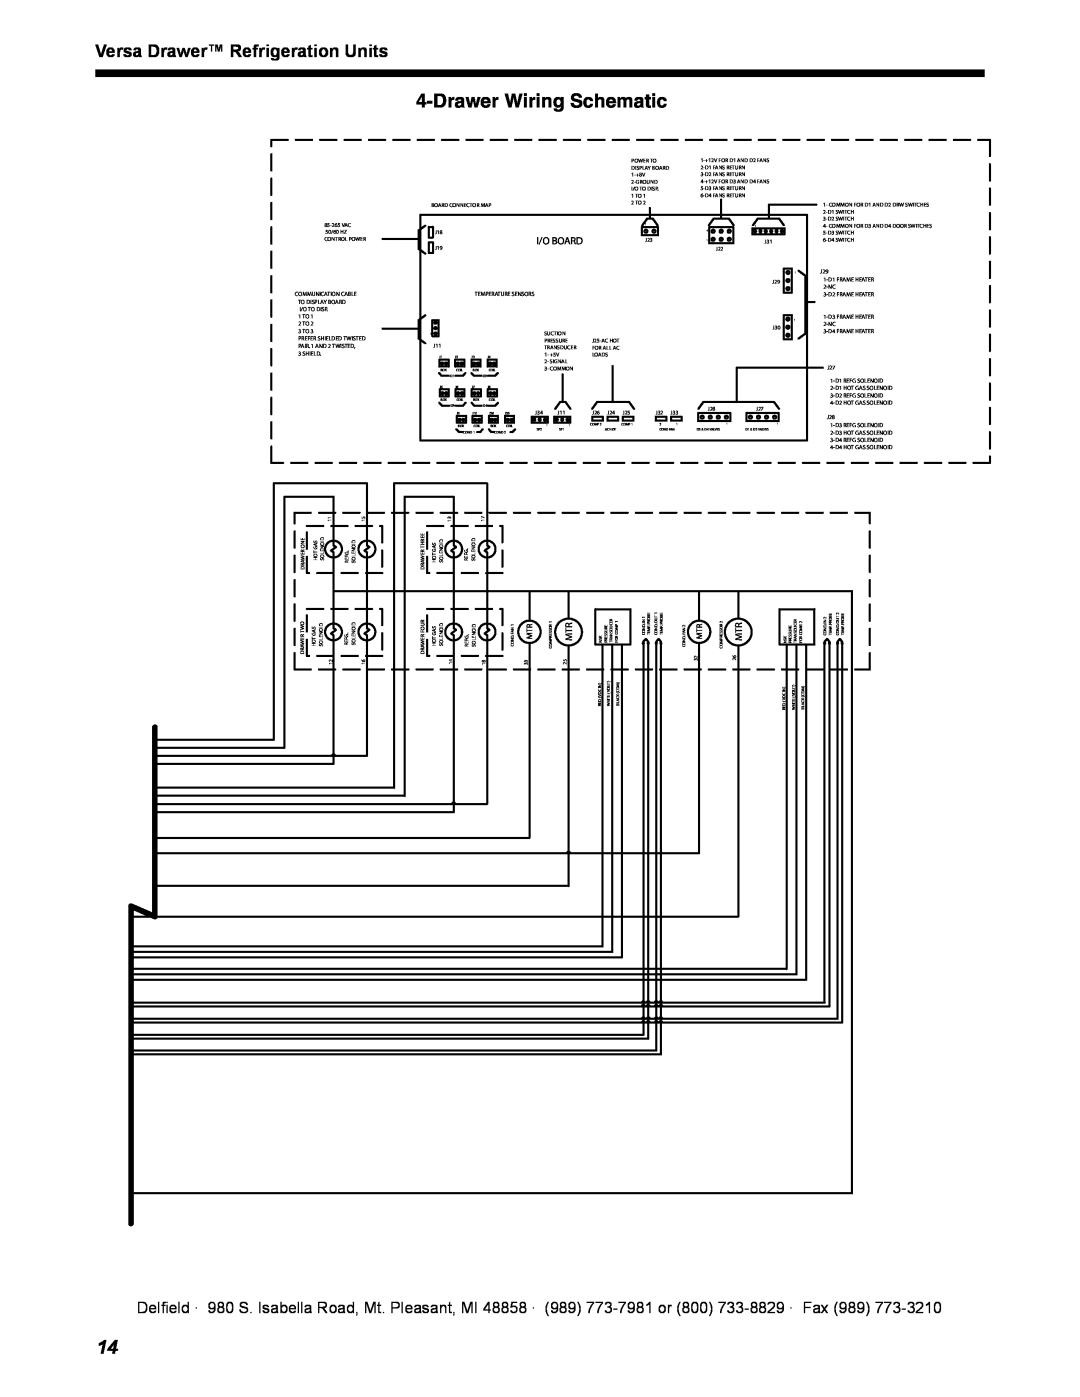 Delfield 18600VD manual Drawer Wiring Schematic, Versa Drawer Refrigeration Units, Delfield ·, //!2$ 